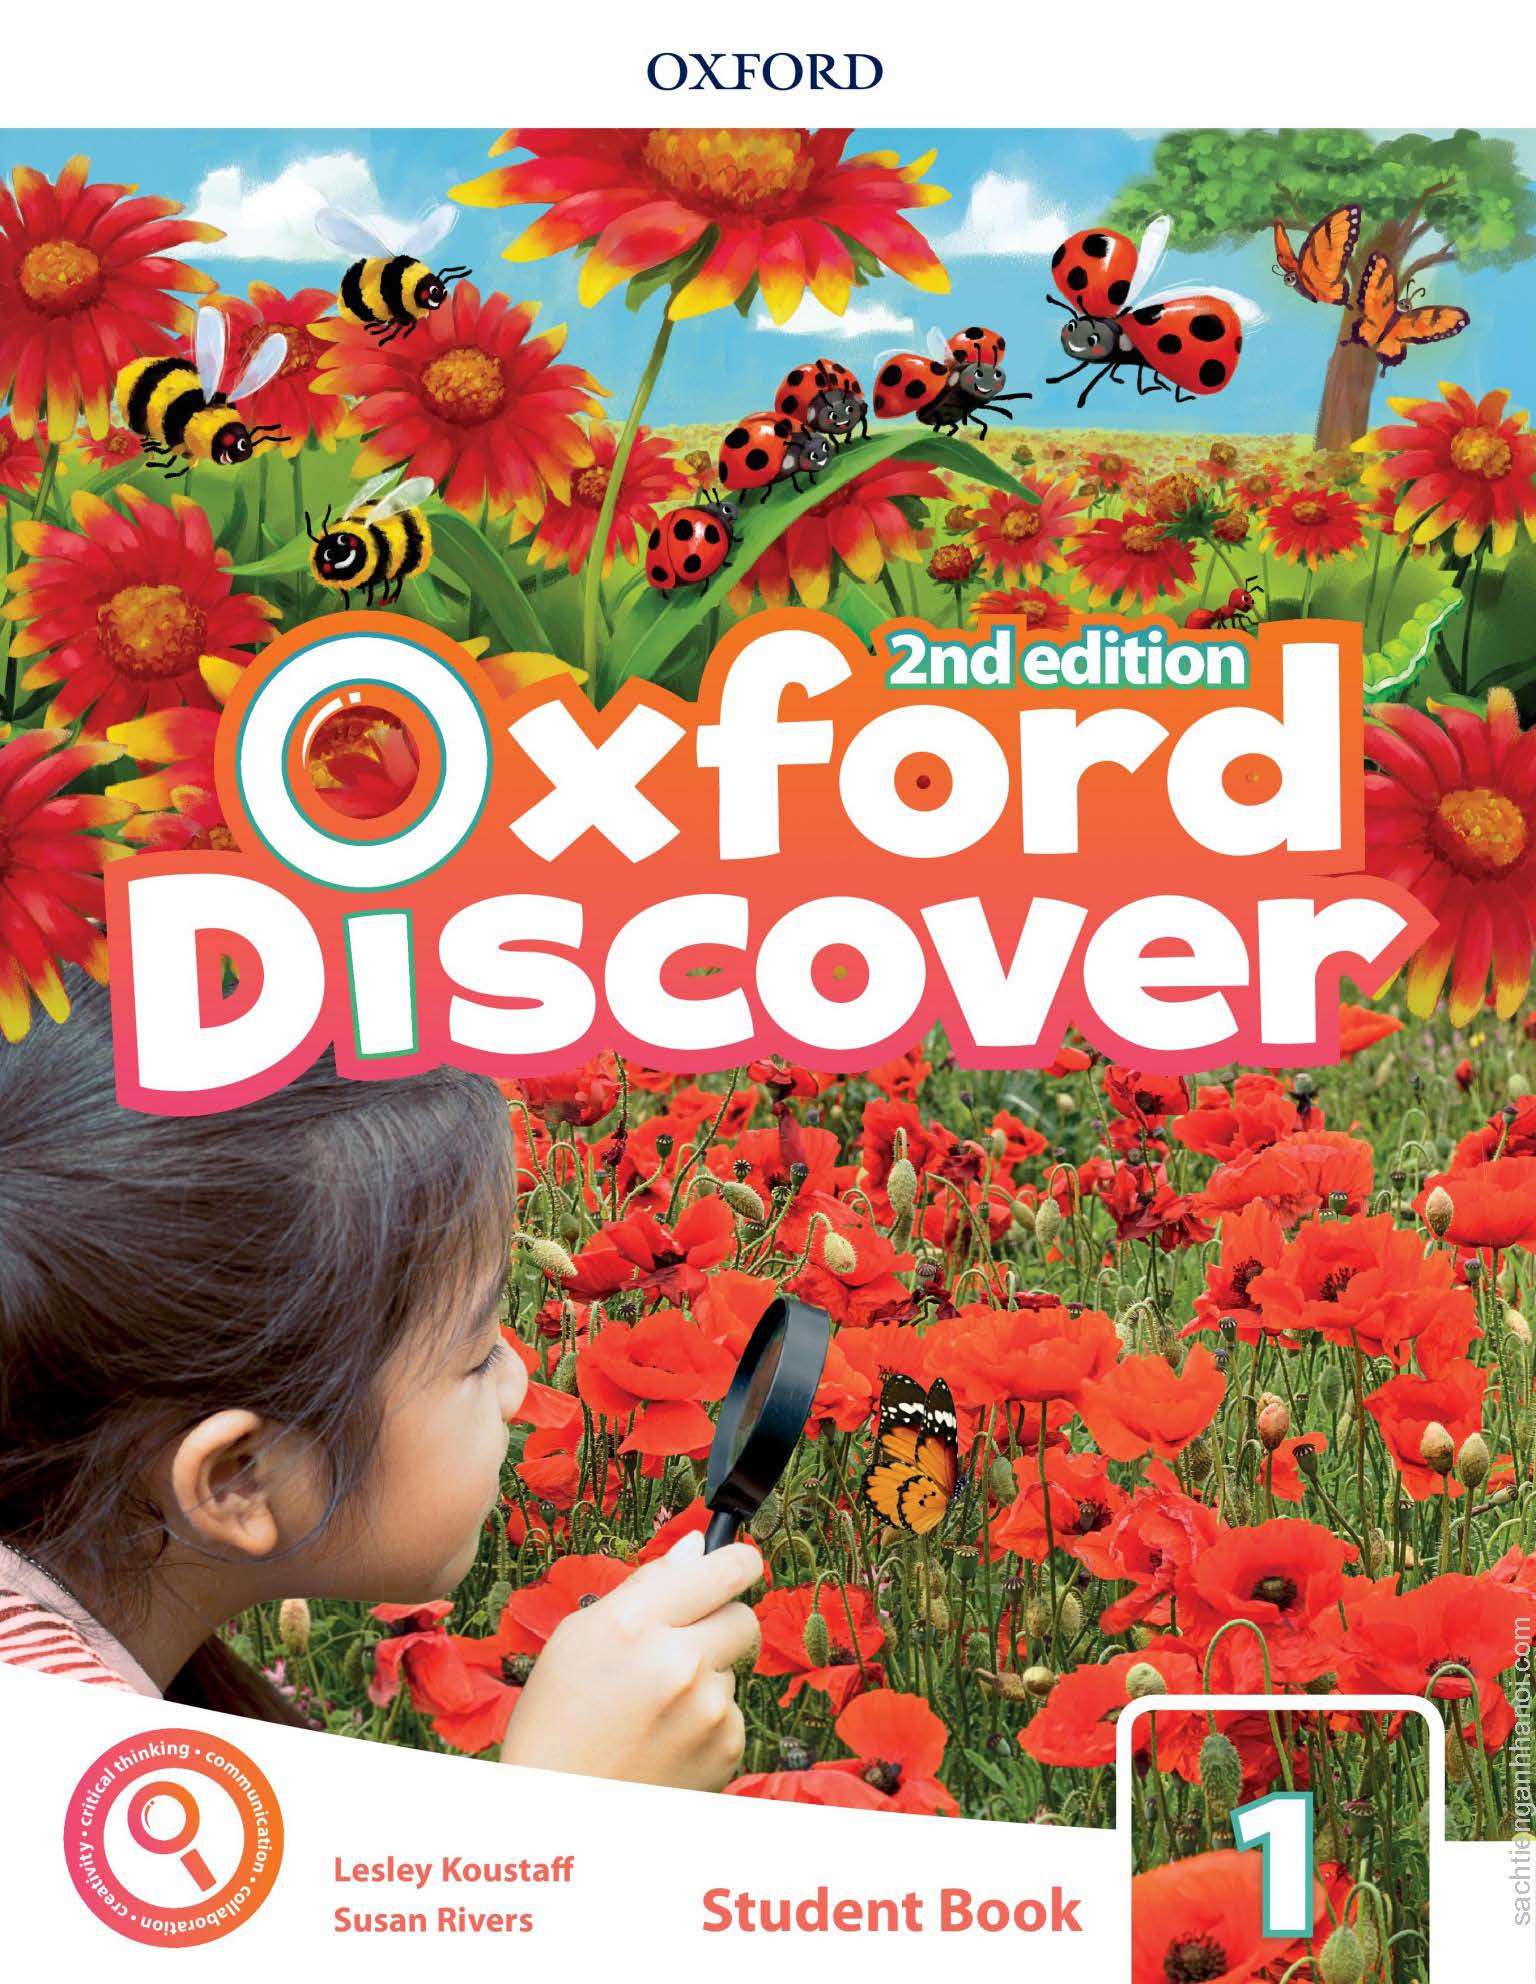 Oxford discover book. Oxford discover 1. Oxford discover 1 (student’s book, Workbook). Oxford discover 2nd Edition. Oxford discover 2 Edition 2.